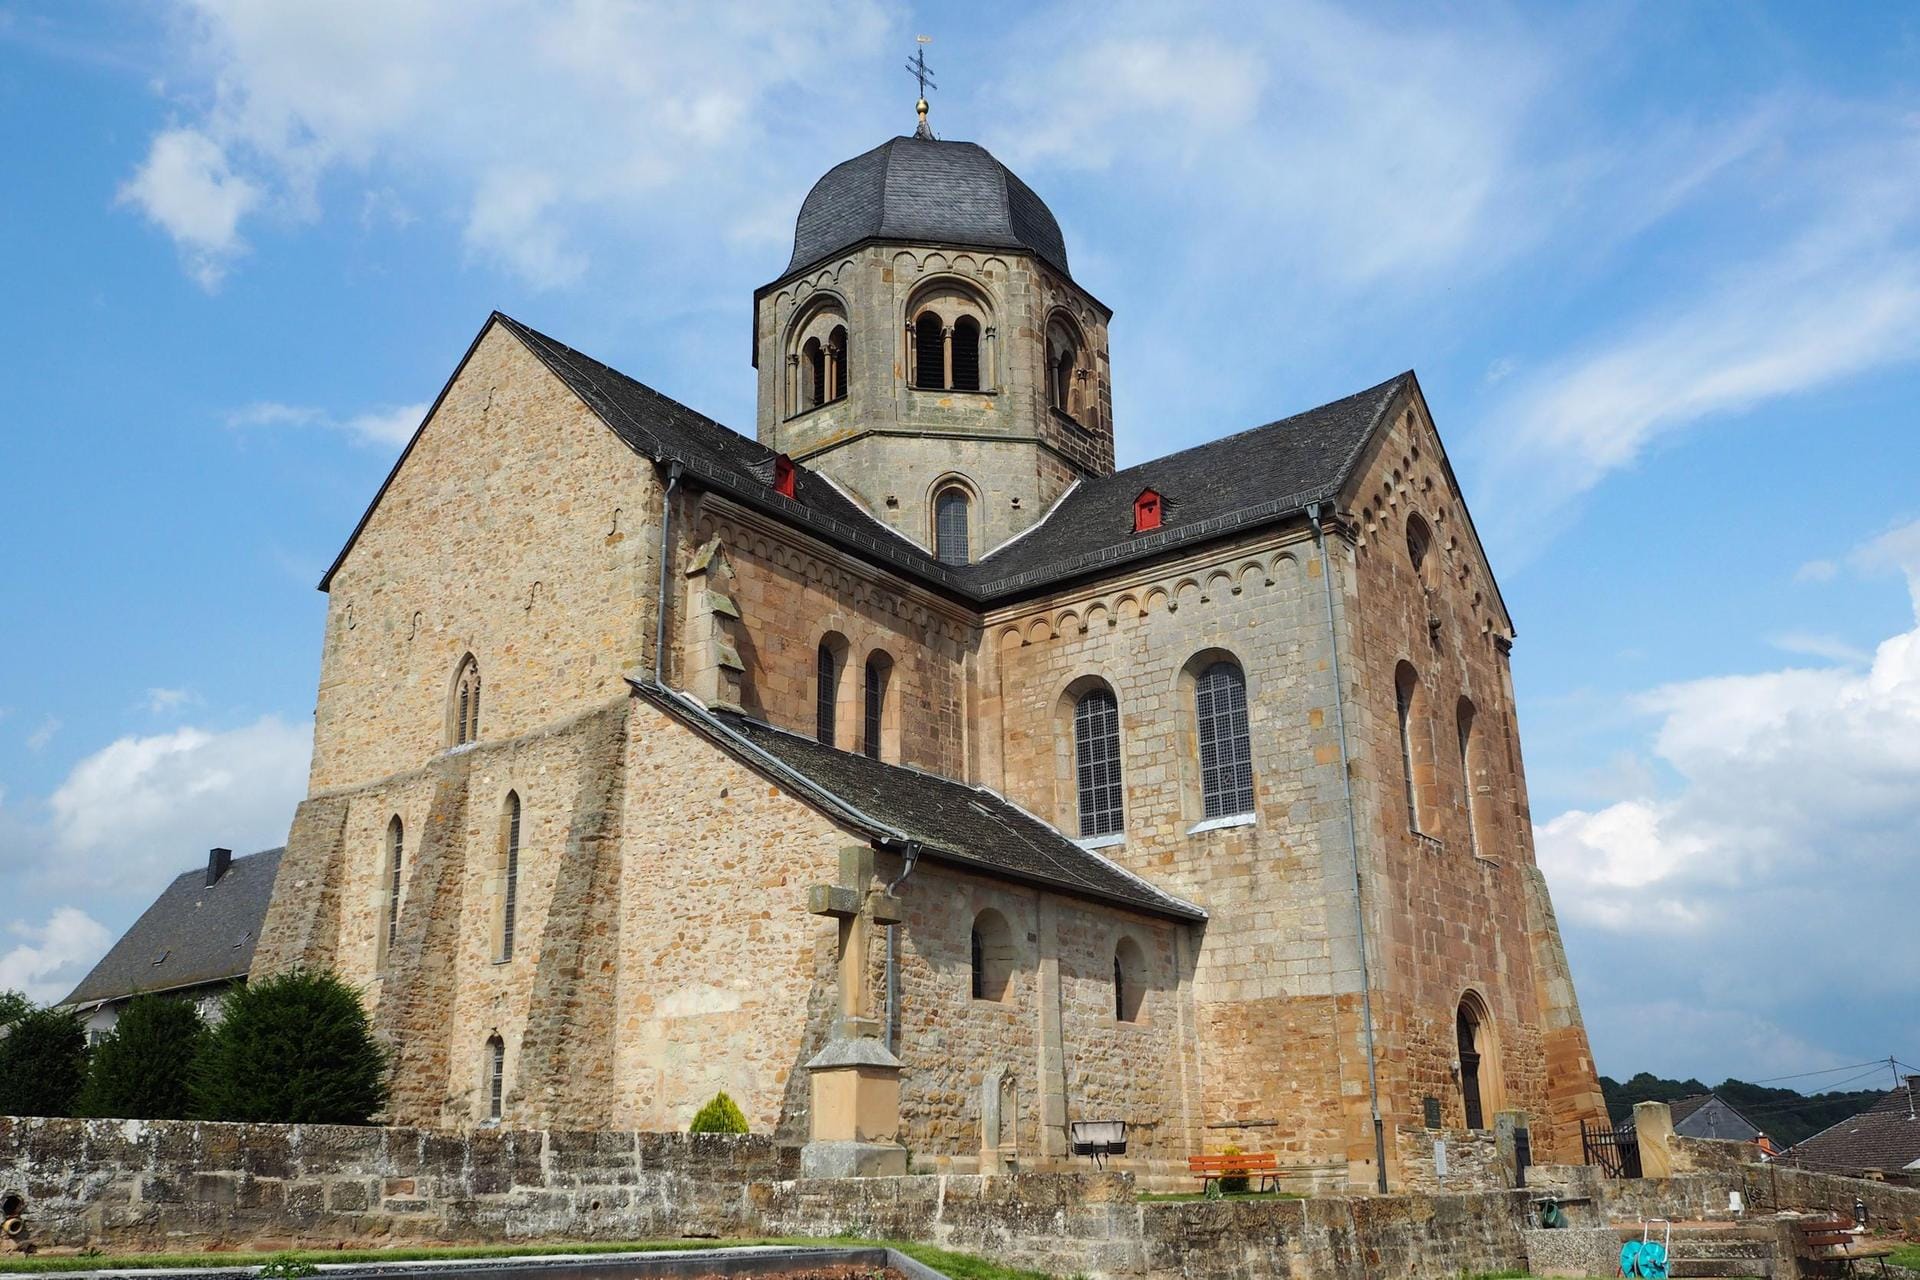 Der mächtige Rundturm und die Schlosskirche erinnern an die Grafen von Sponheim.